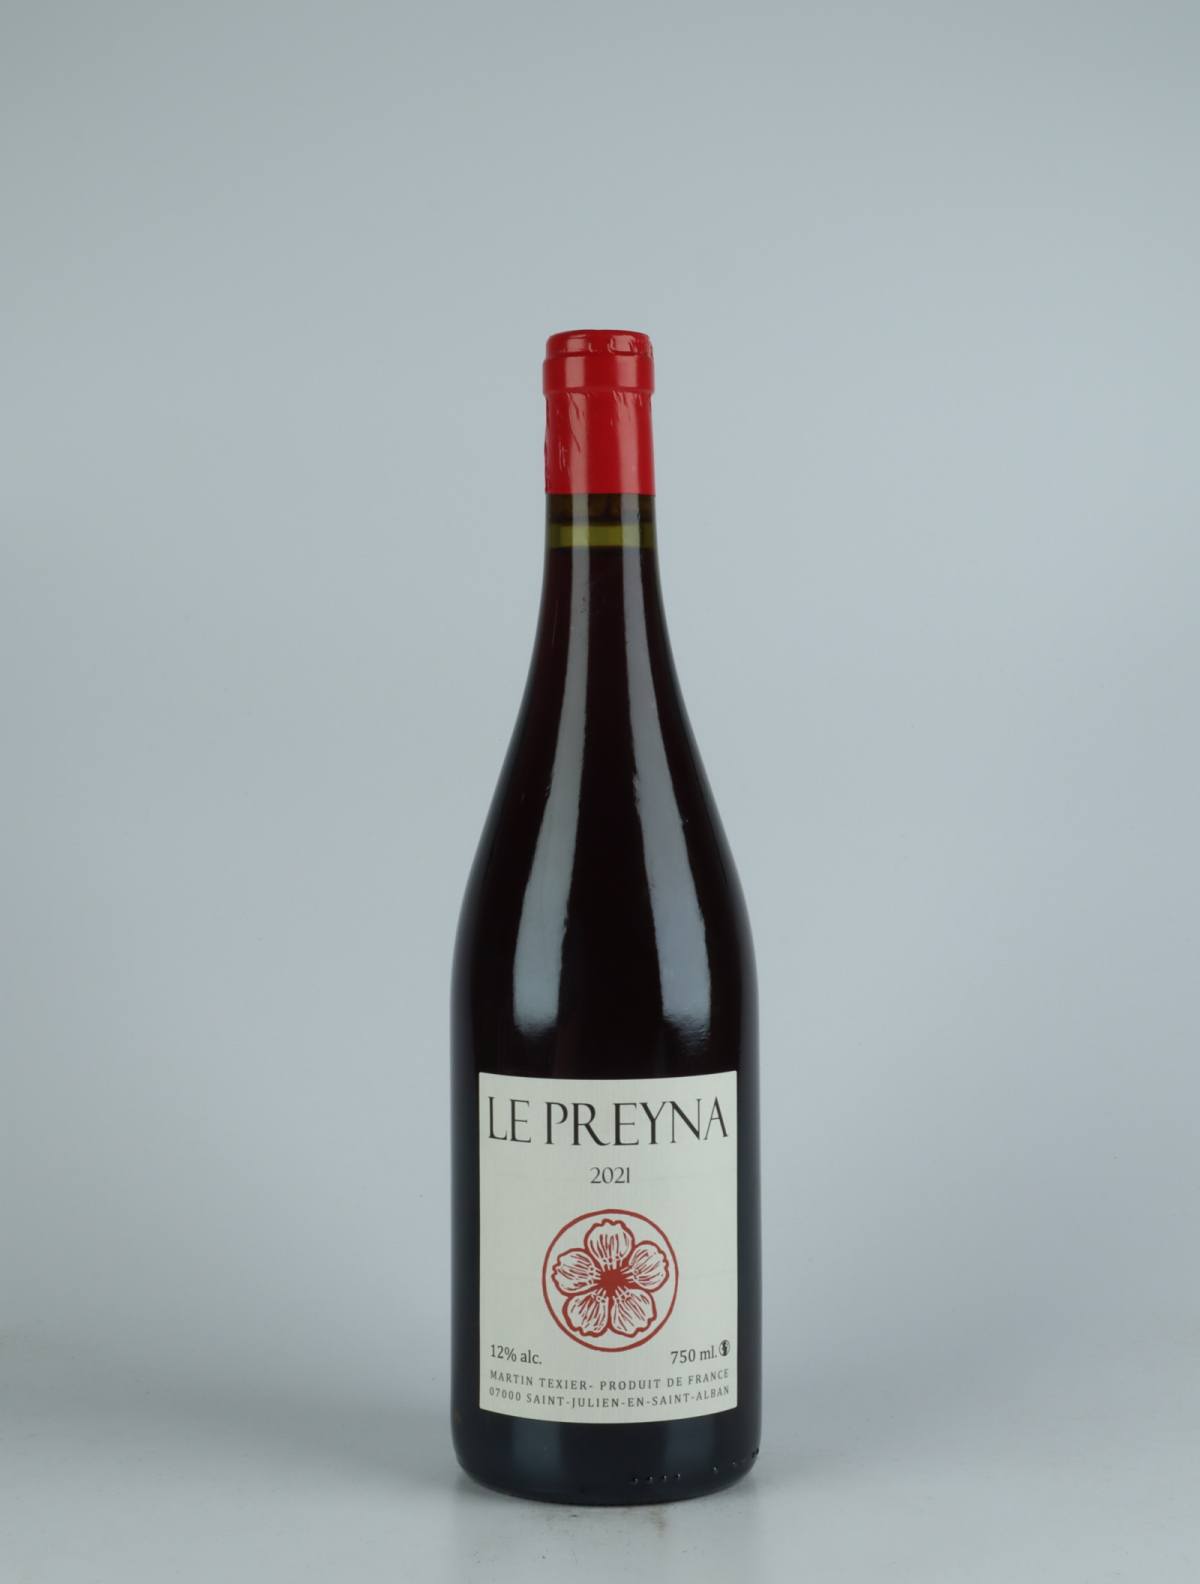 En flaske 2021 Le Preyna Rødvin fra Martin Texier, Rhône i Frankrig